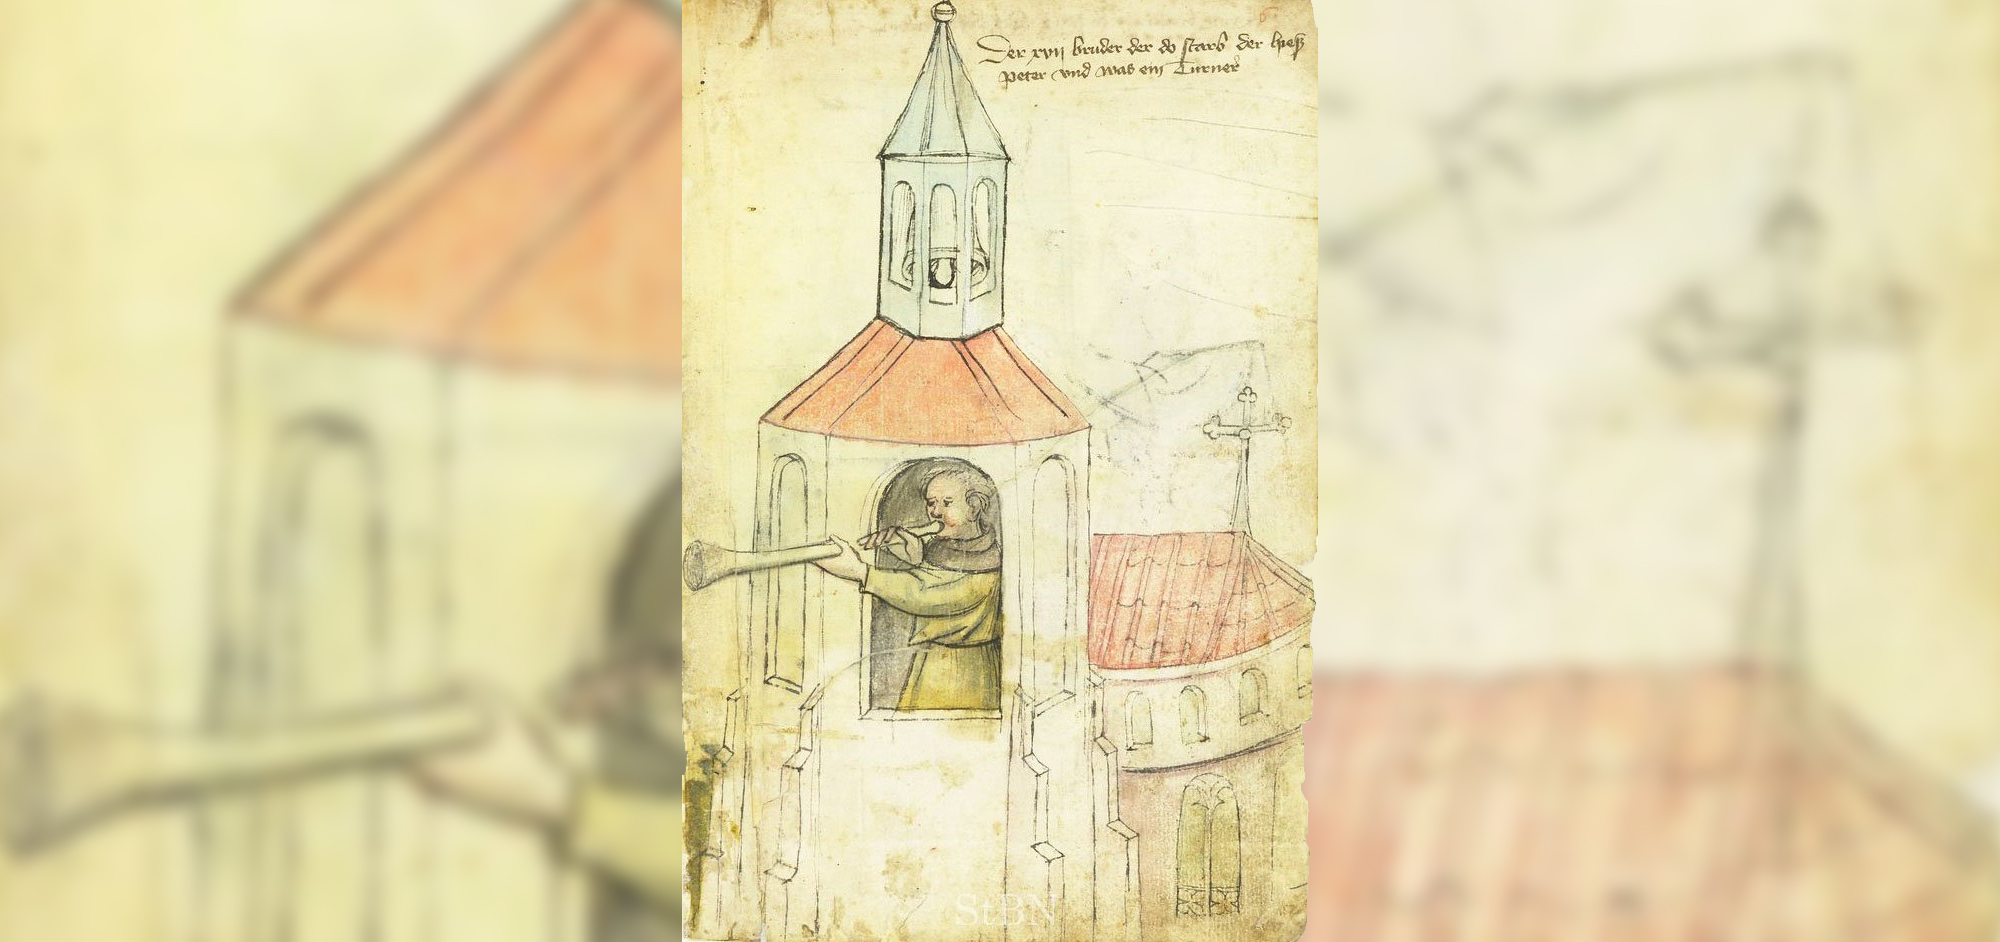 Auf geht's! Der Türmer namens Peter steht in der offenen Turmkammer und bläst mit der Busine das Stundensignal (um 1425).